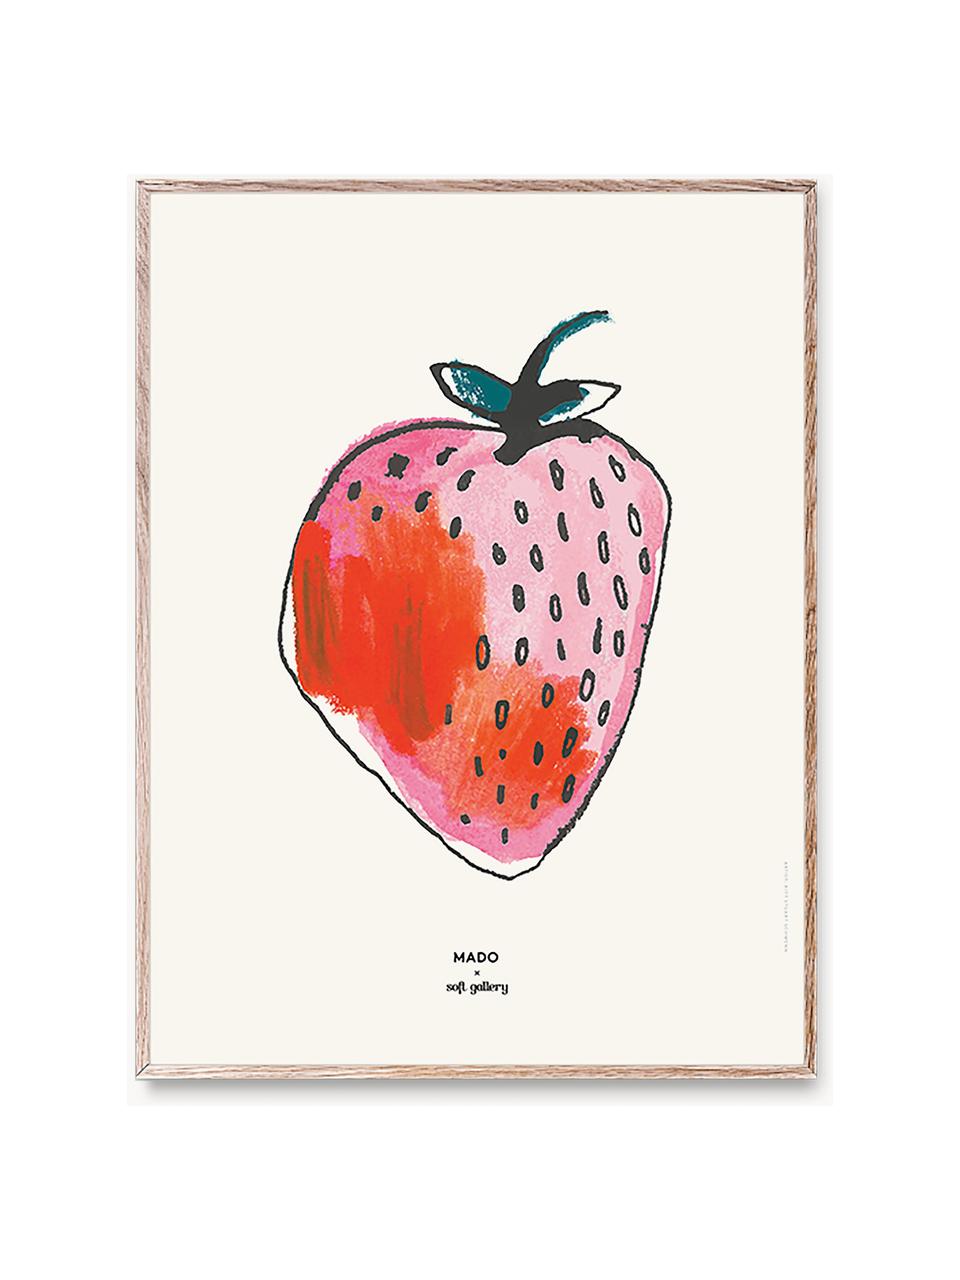 Plakát Strawberry, 230 g matný zušlechtěný papír, digitální tisk s 12 barvami.

Tento produkt je vyroben z udržitelných zdrojů dřeva s certifikací FSC®., Tlumeně bílá, světle růžová, korálově červená, Š 30 cm, V 40 cm